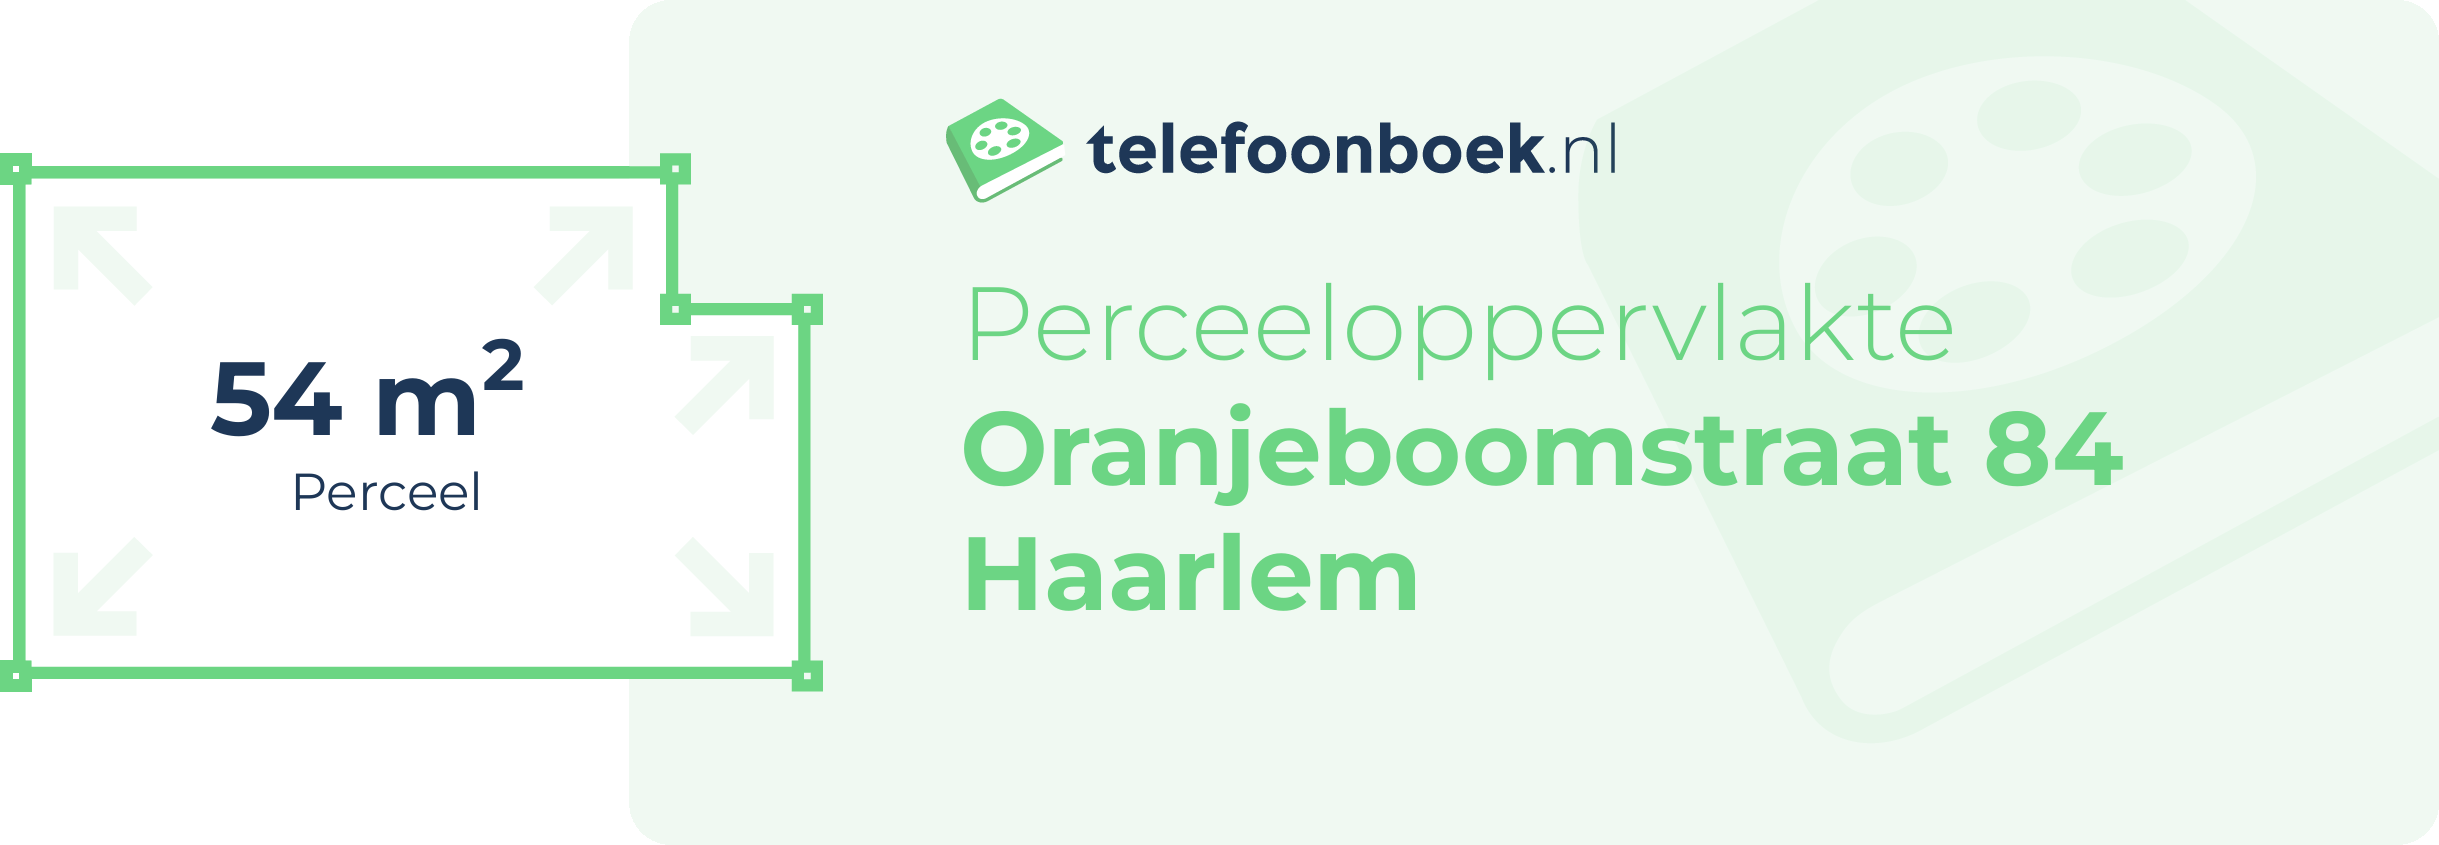 Perceeloppervlakte Oranjeboomstraat 84 Haarlem